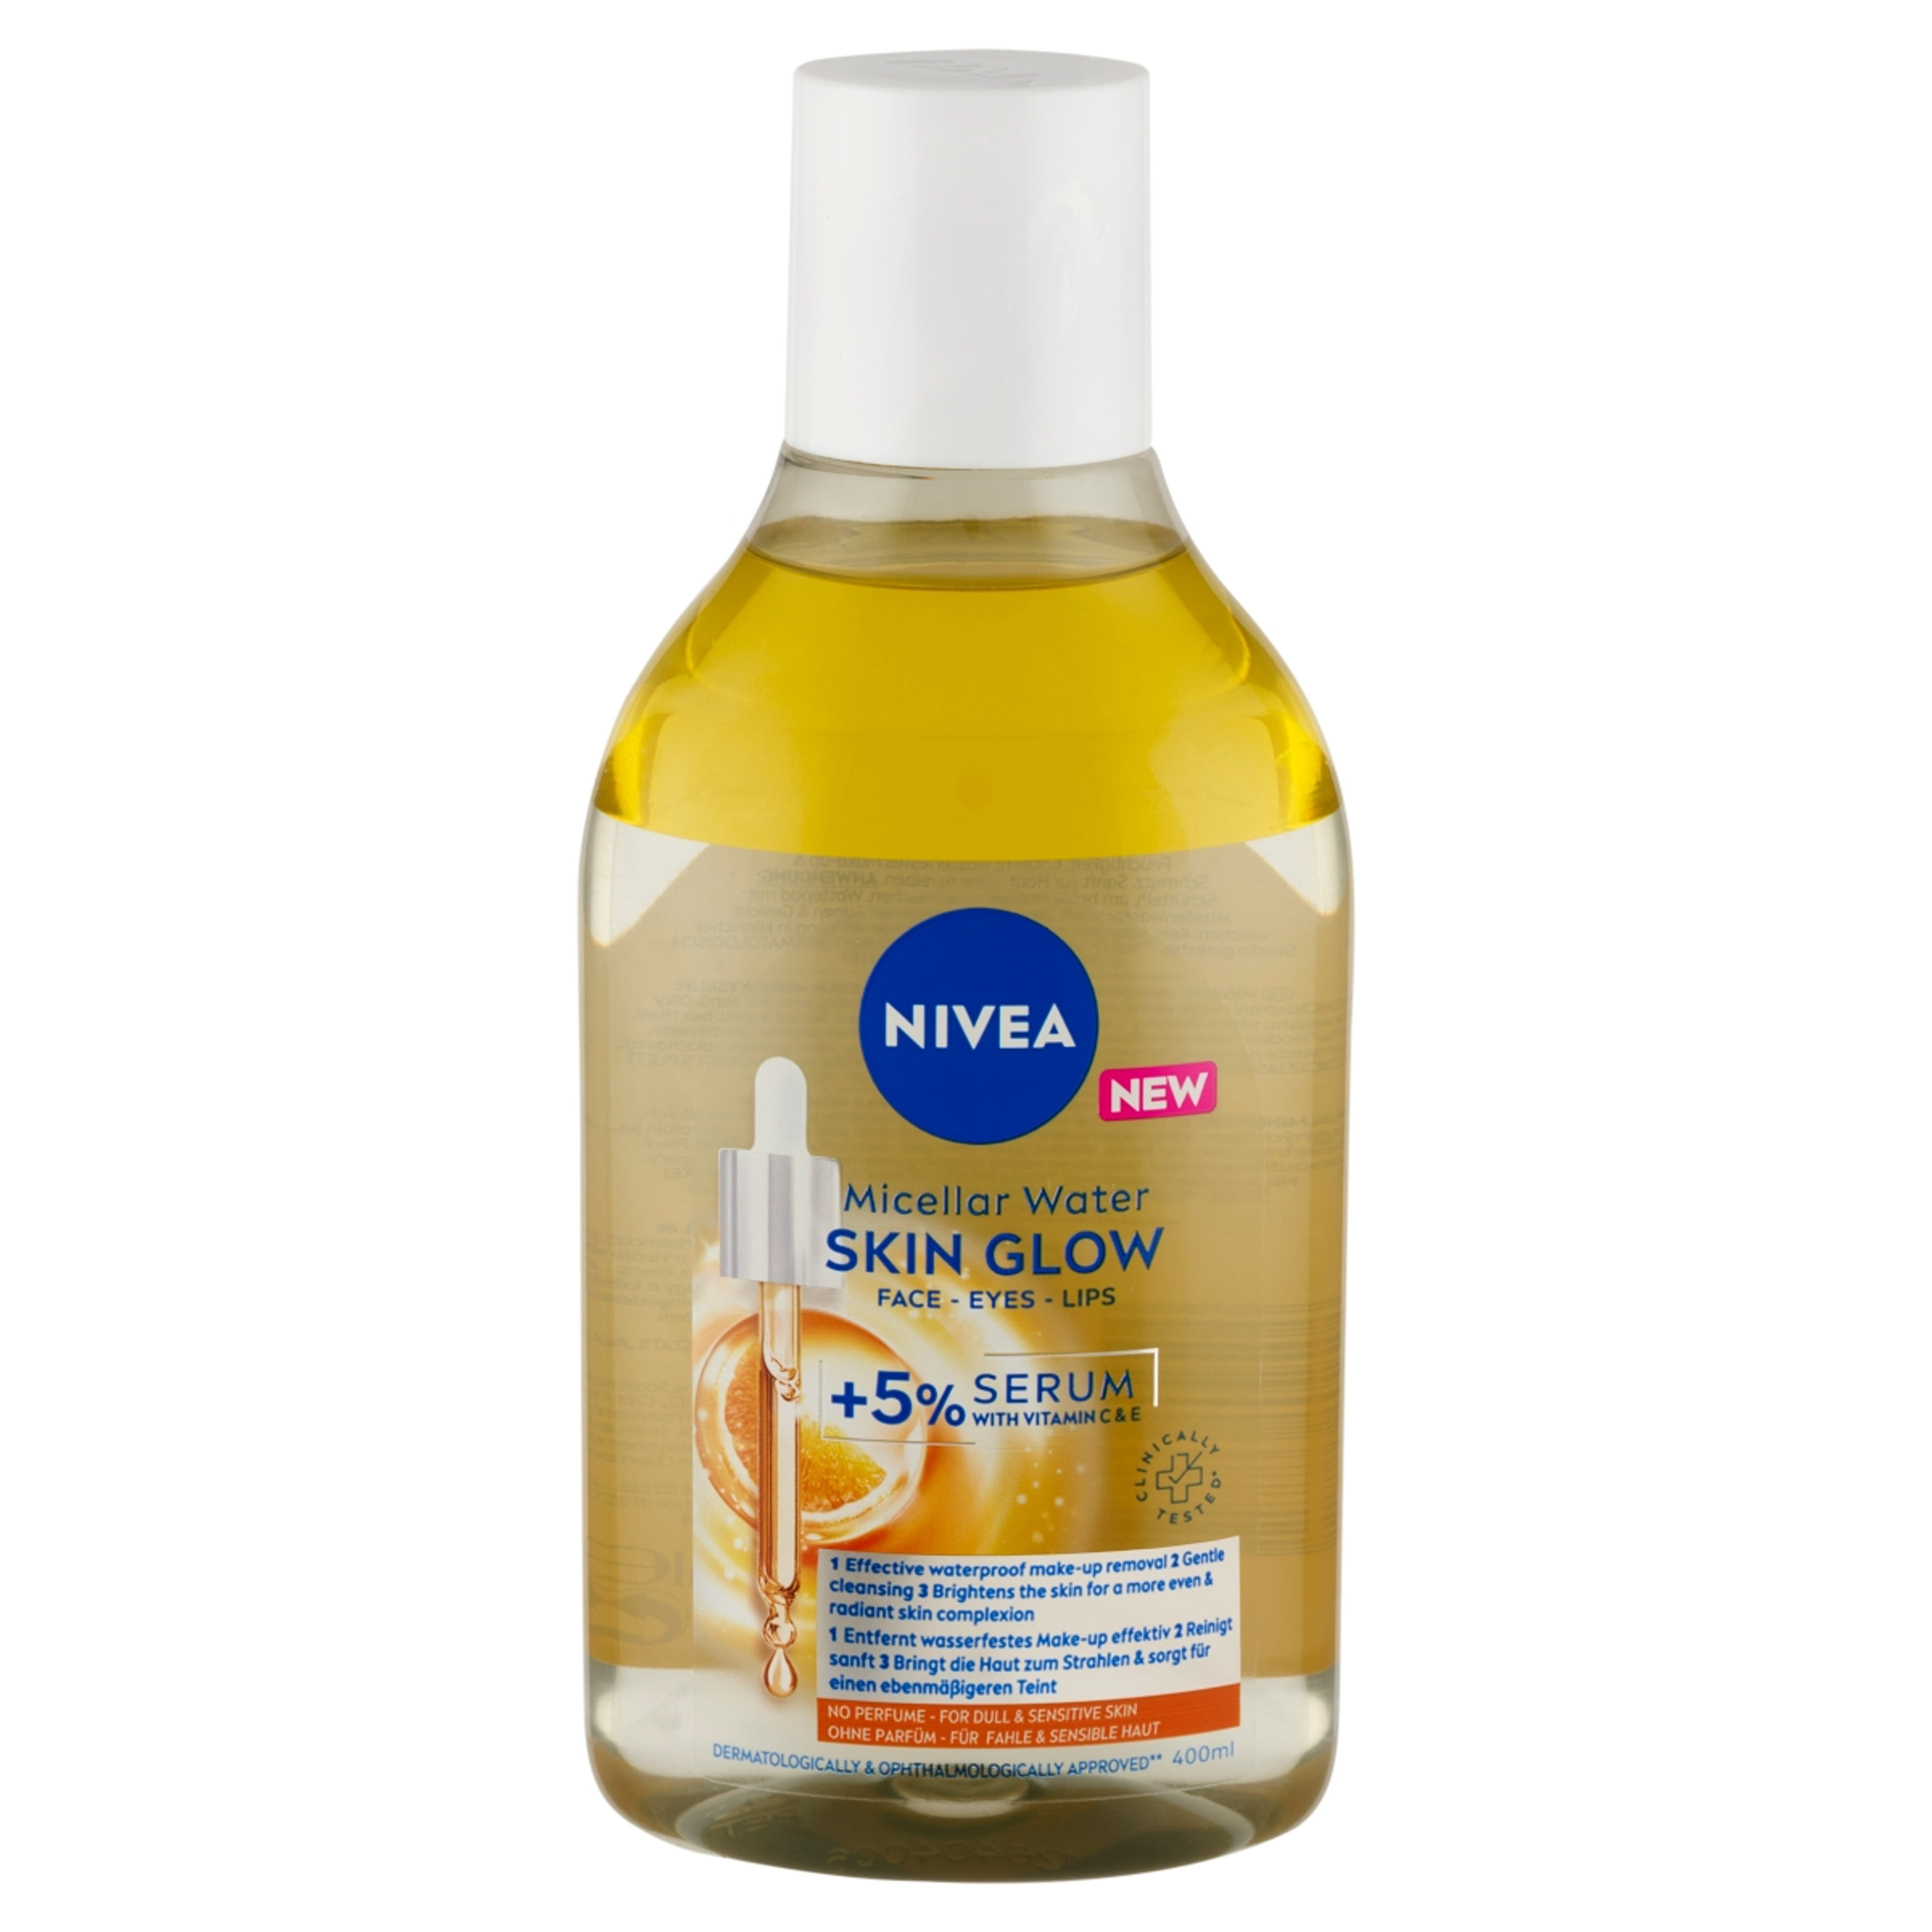 Nivea Skin Glow micellás víz - 400 ml-2